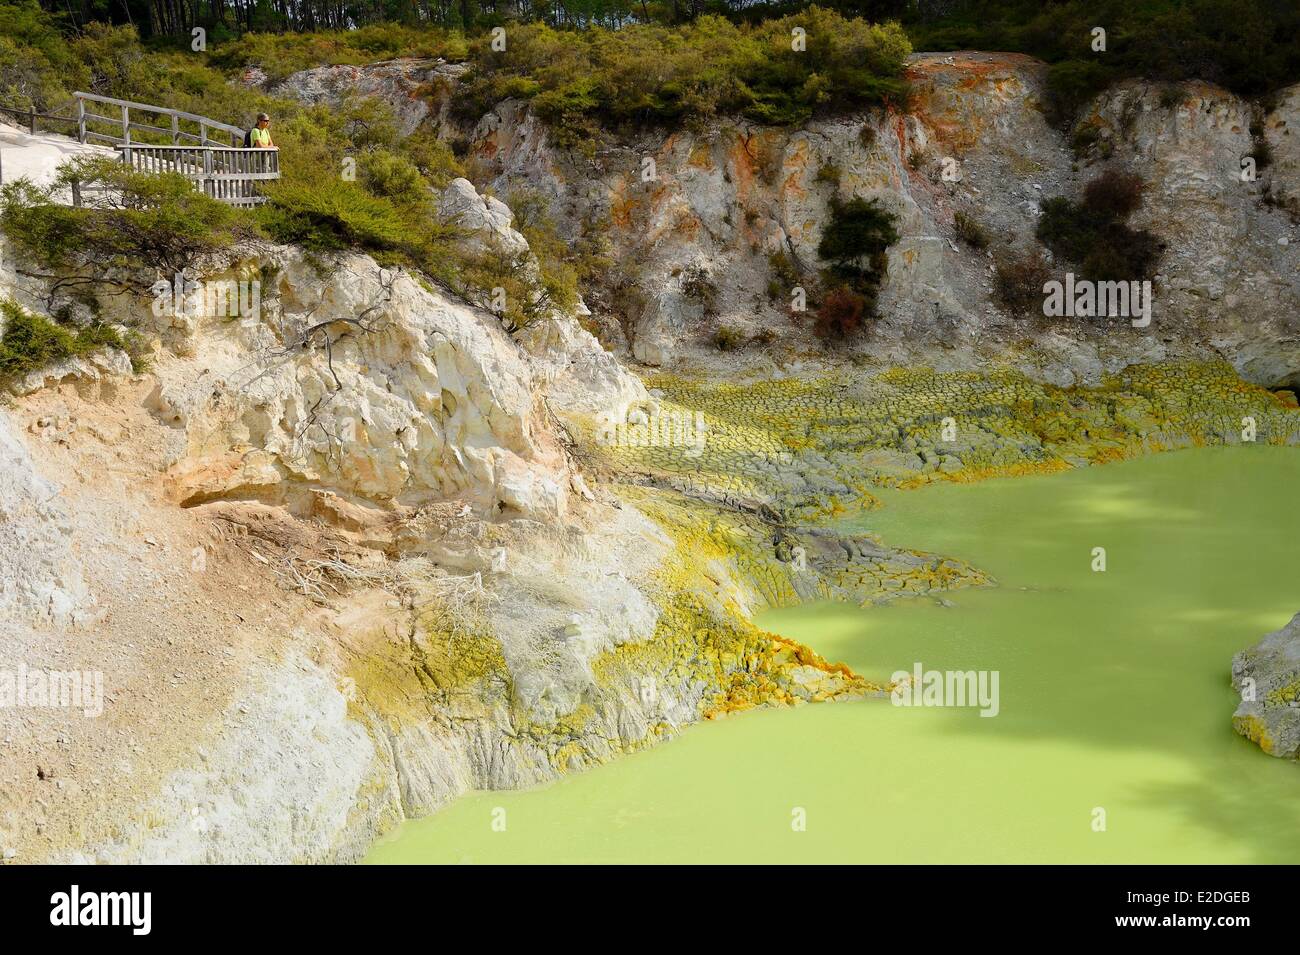 Nuova Zelanda Isola del nord del Distretto di Rotorua Taupo zona vulcanica del parco geotermico del Wai-O-Tapu Devil's vasca da bagno Foto Stock